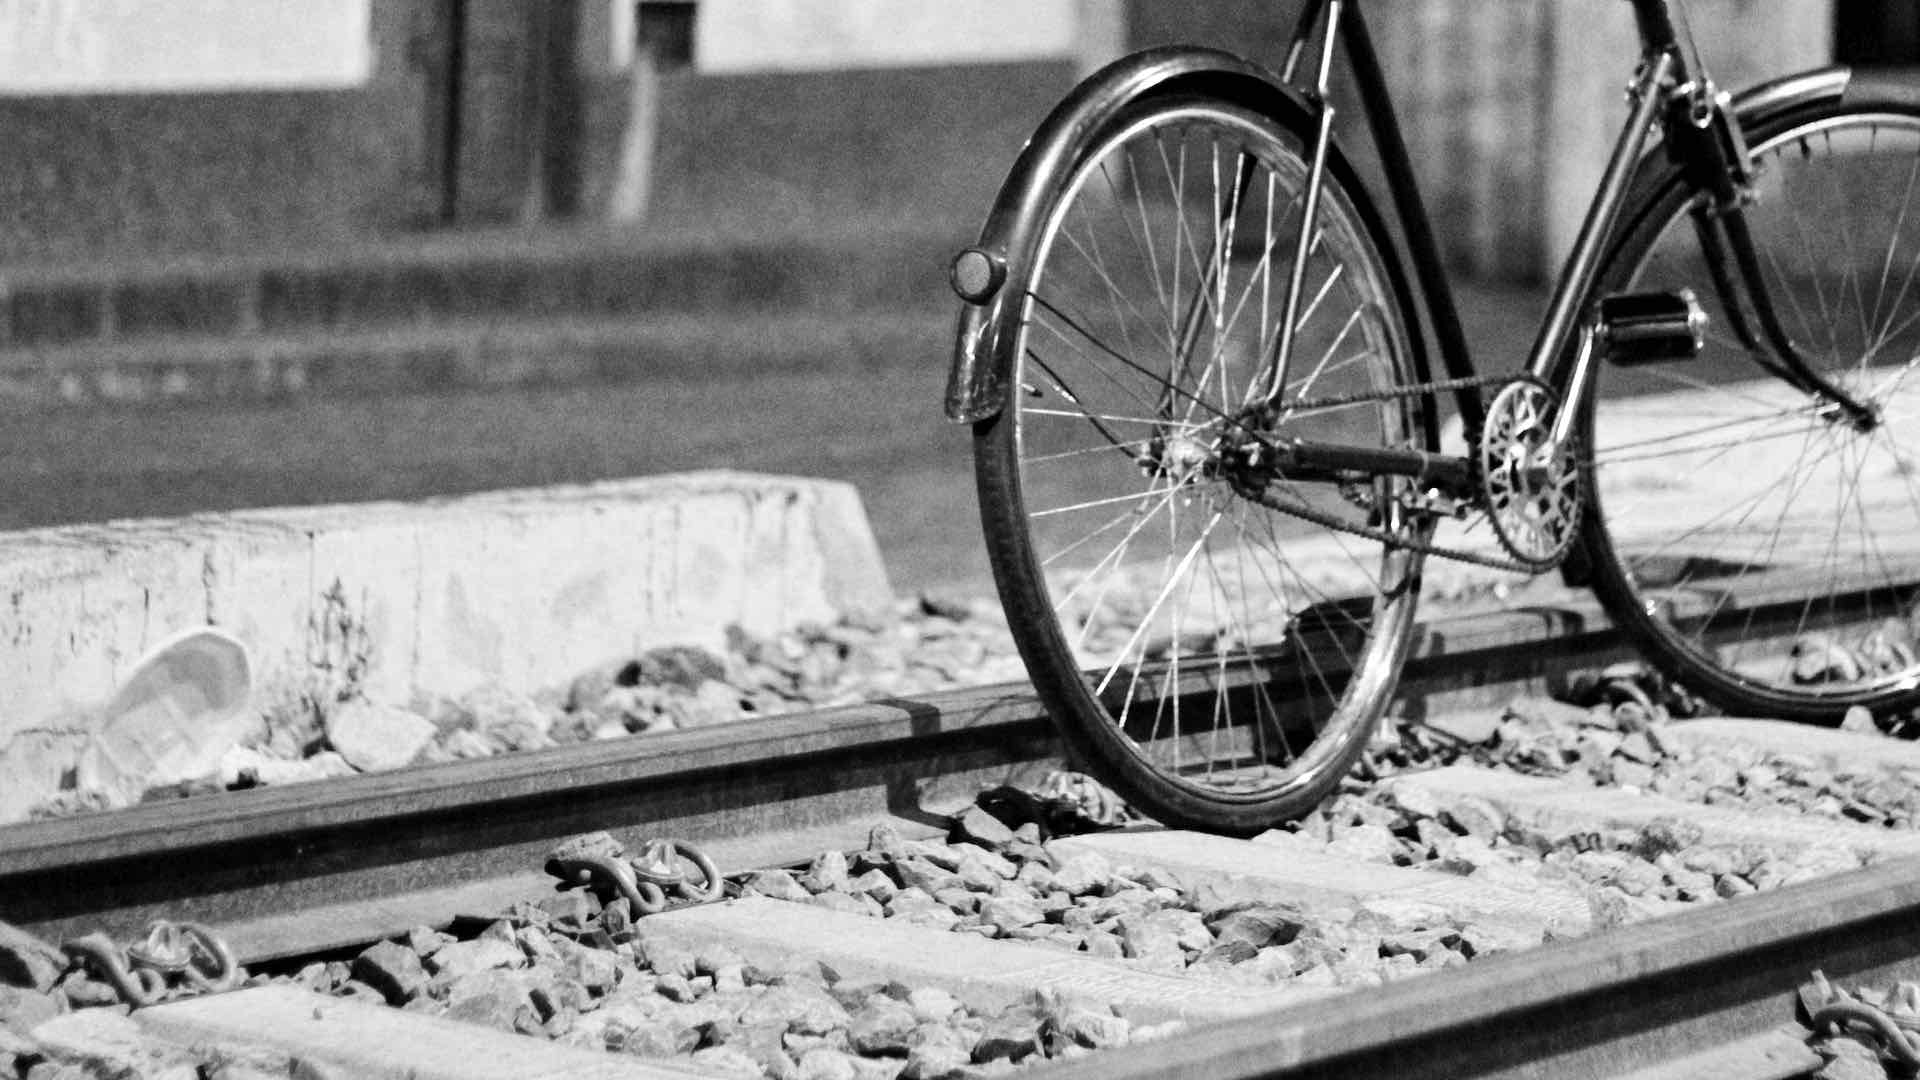 Bicycle on railway